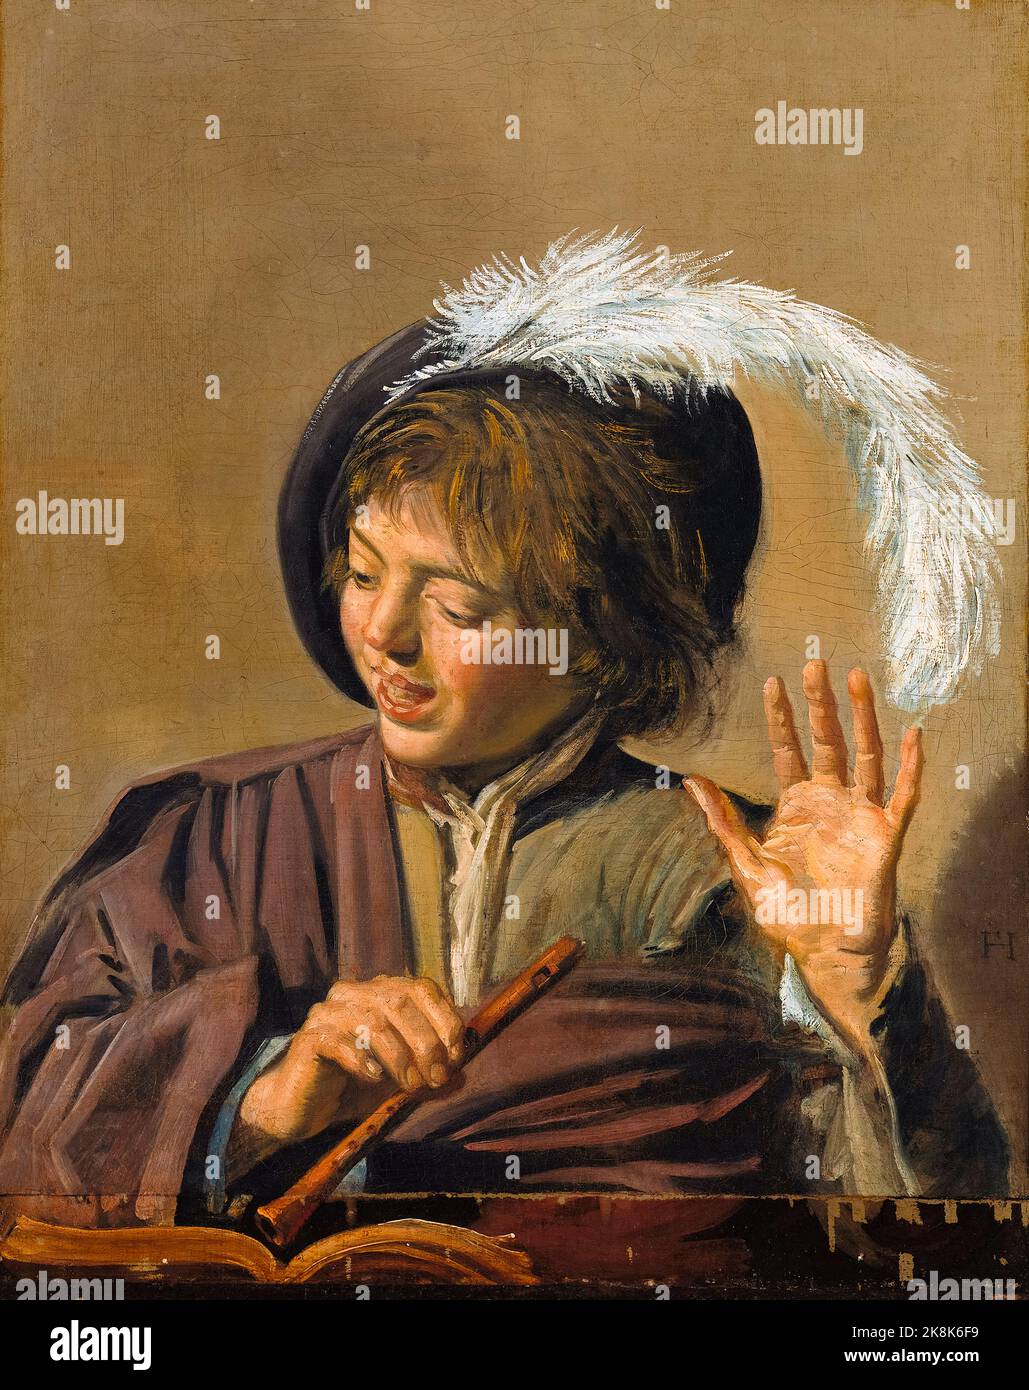 Frans Hals, chant Boy with Flute, portrait peint à l'huile sur toile, vers 1623 Banque D'Images